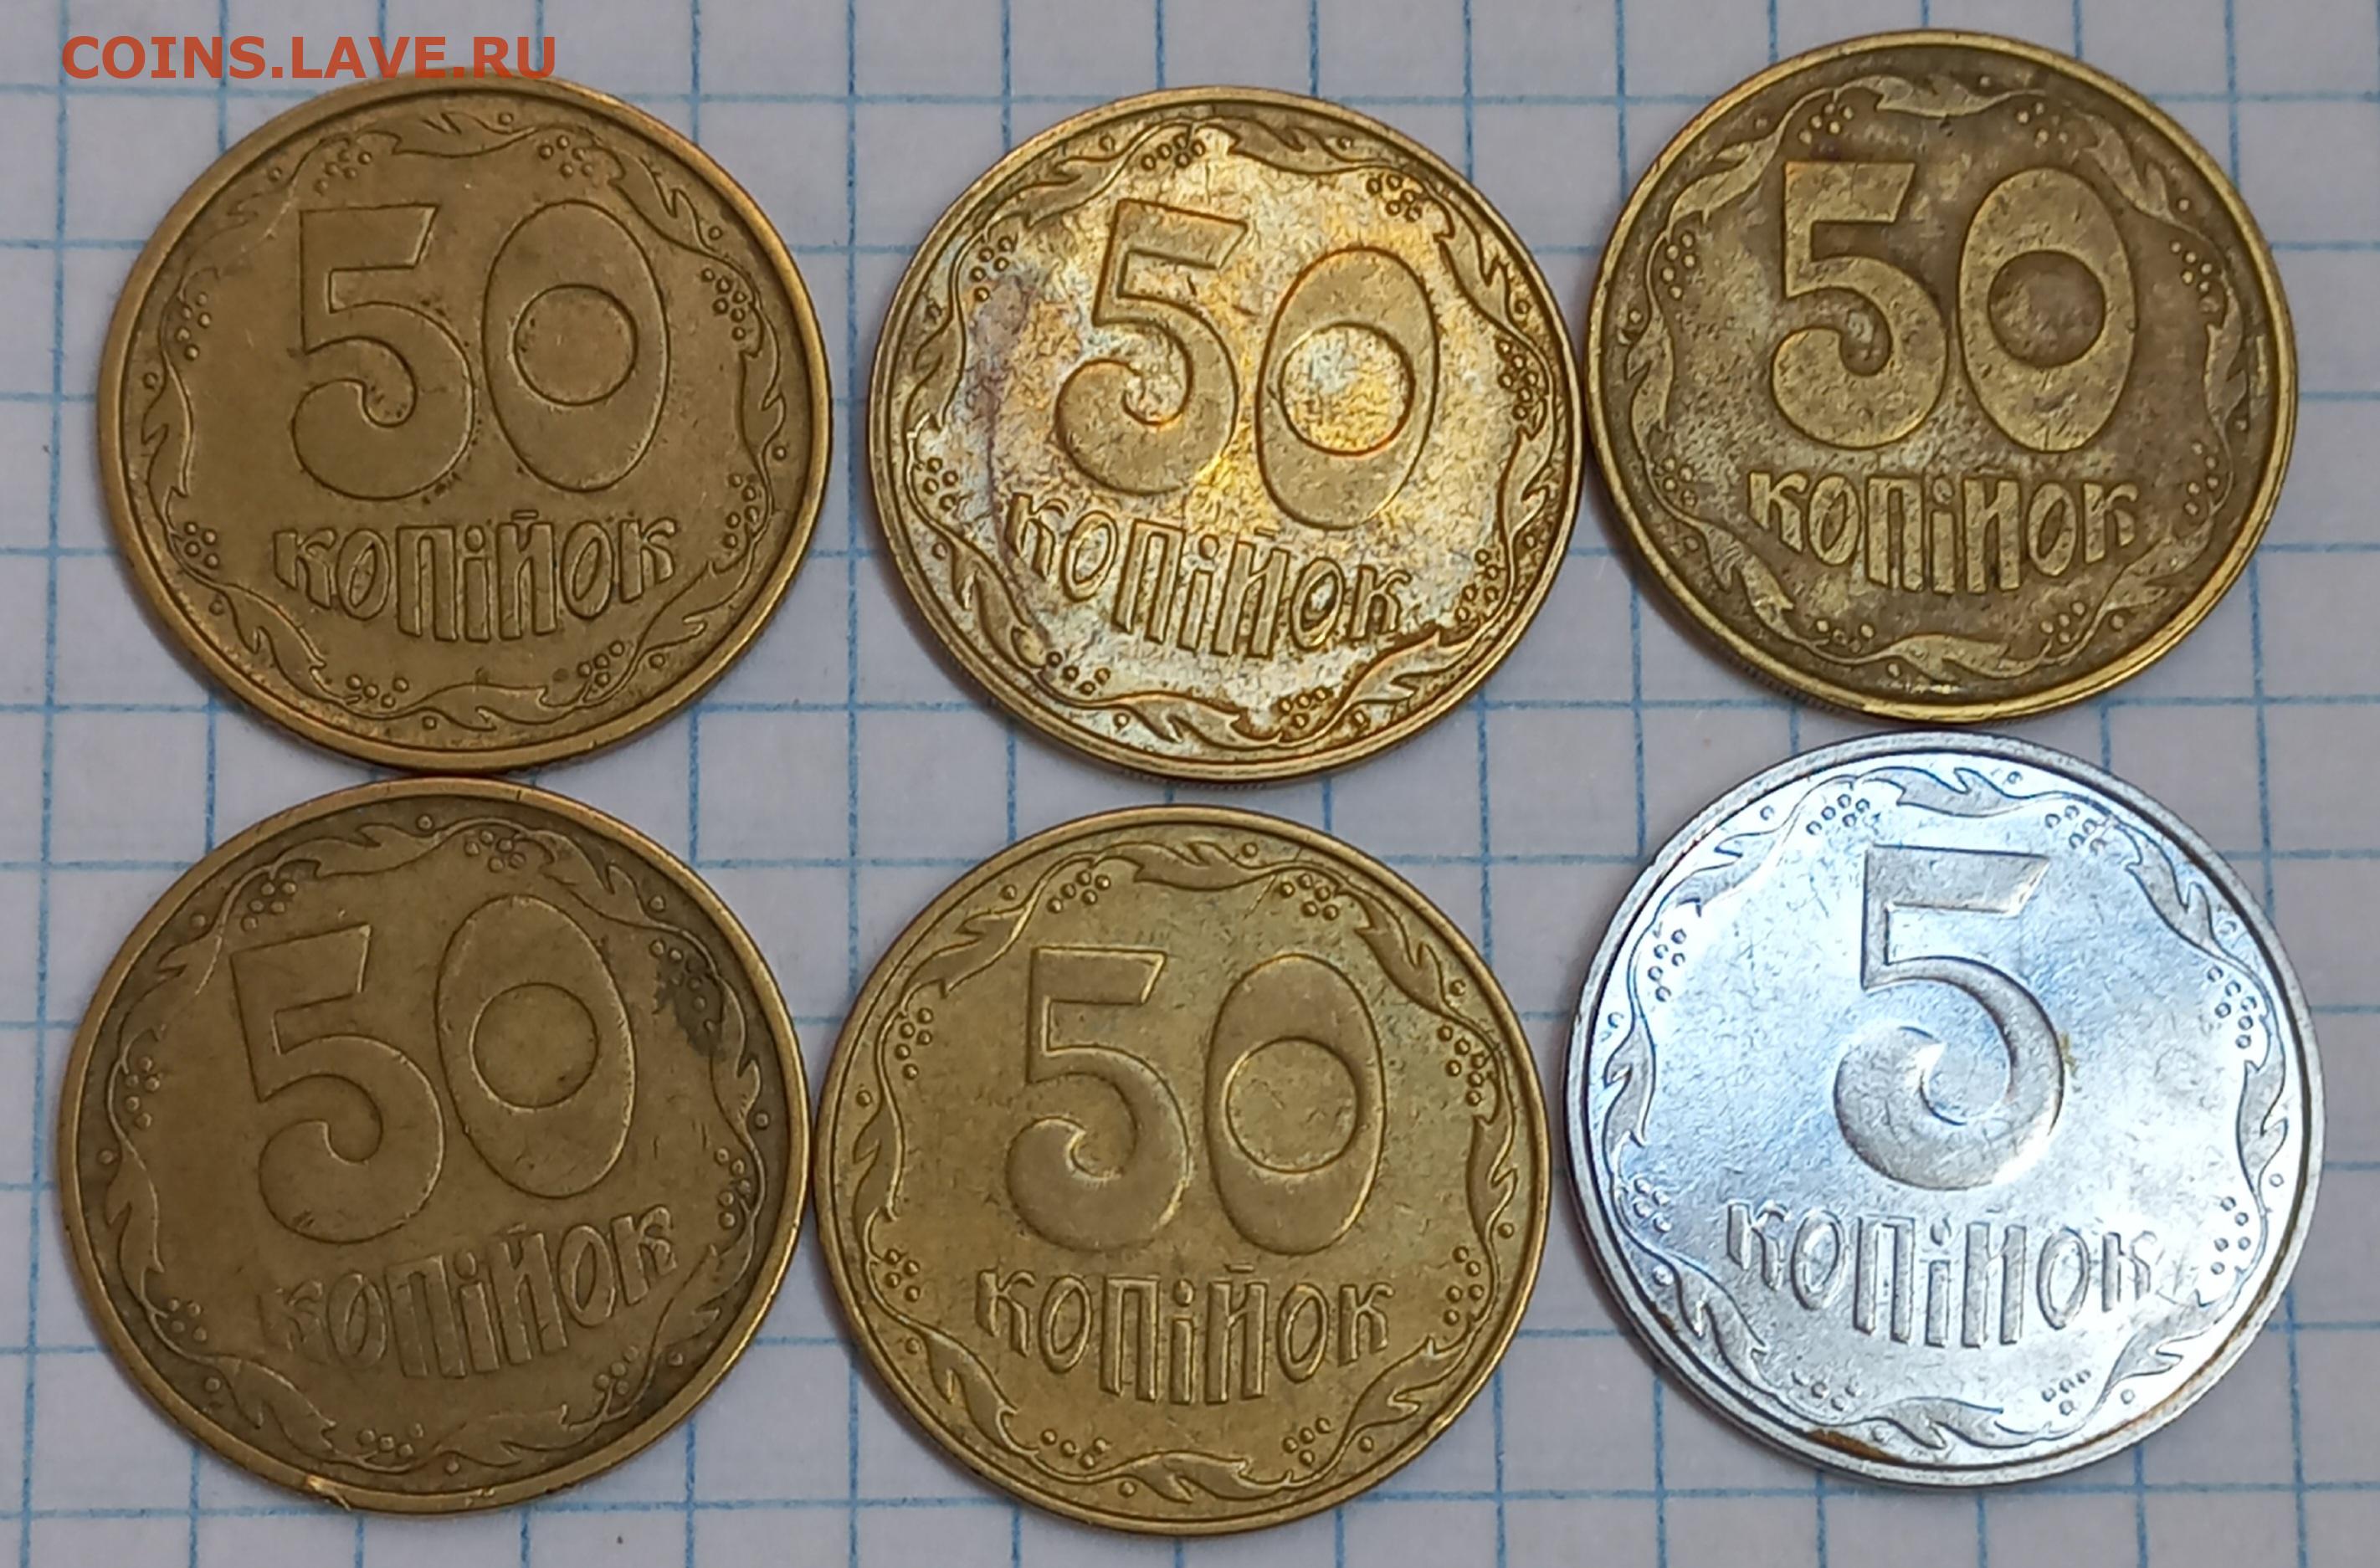 8 копеек в рублях. Копейки СССР. Монеты 1 2 5 10 рублей. 5 Копеек и 50 копеек.